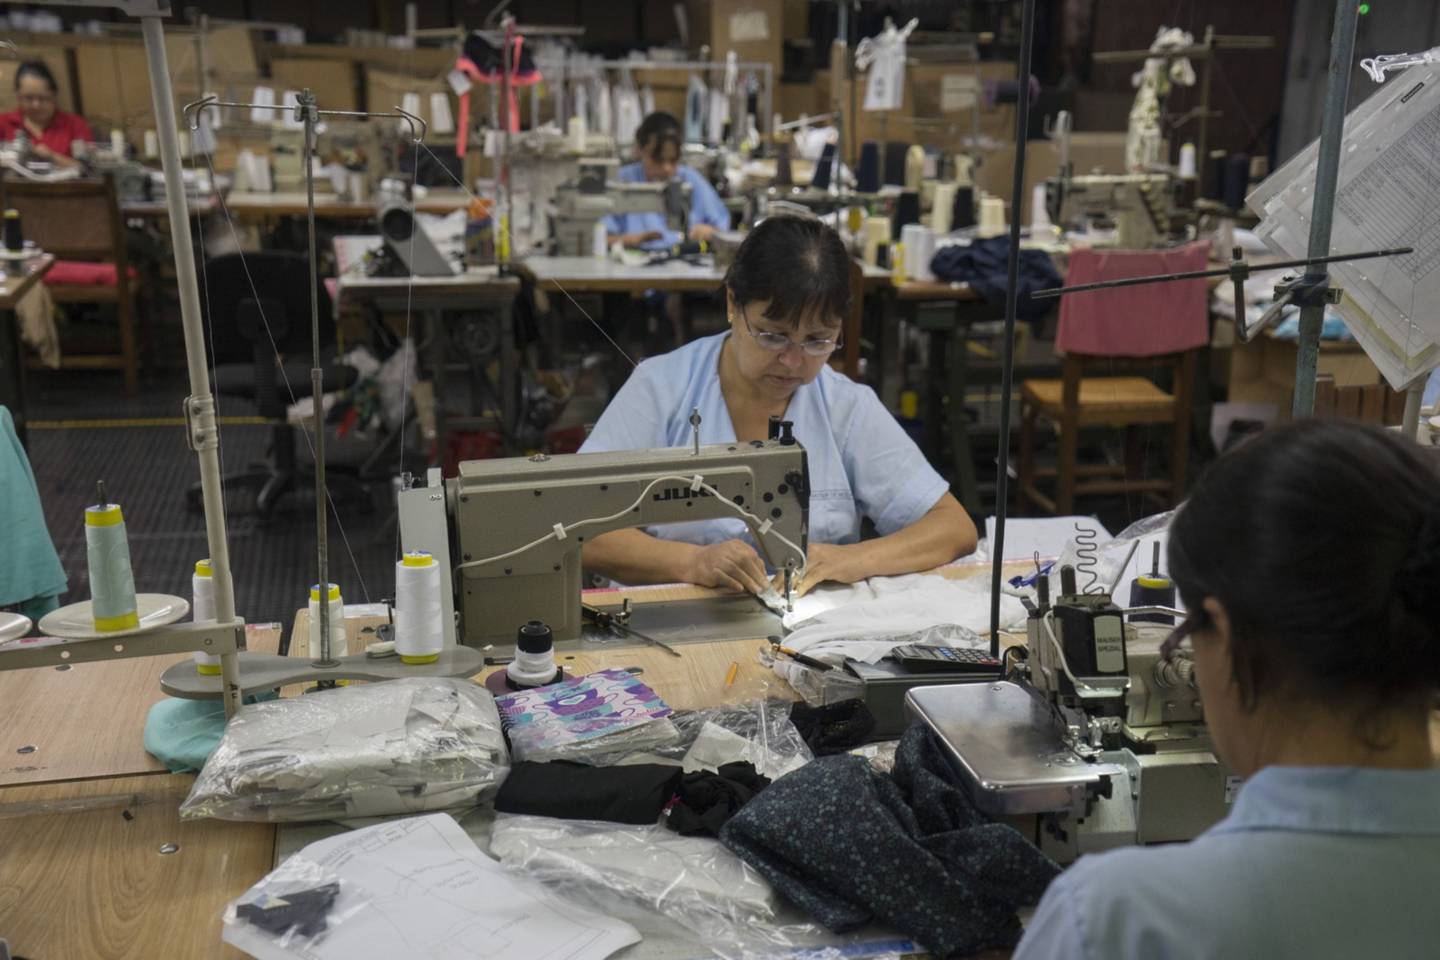 Los trabajadores operan máquinas de coser en la fábrica de Touche en Medellín, Colombia, el lunes 25 de agosto de 2014